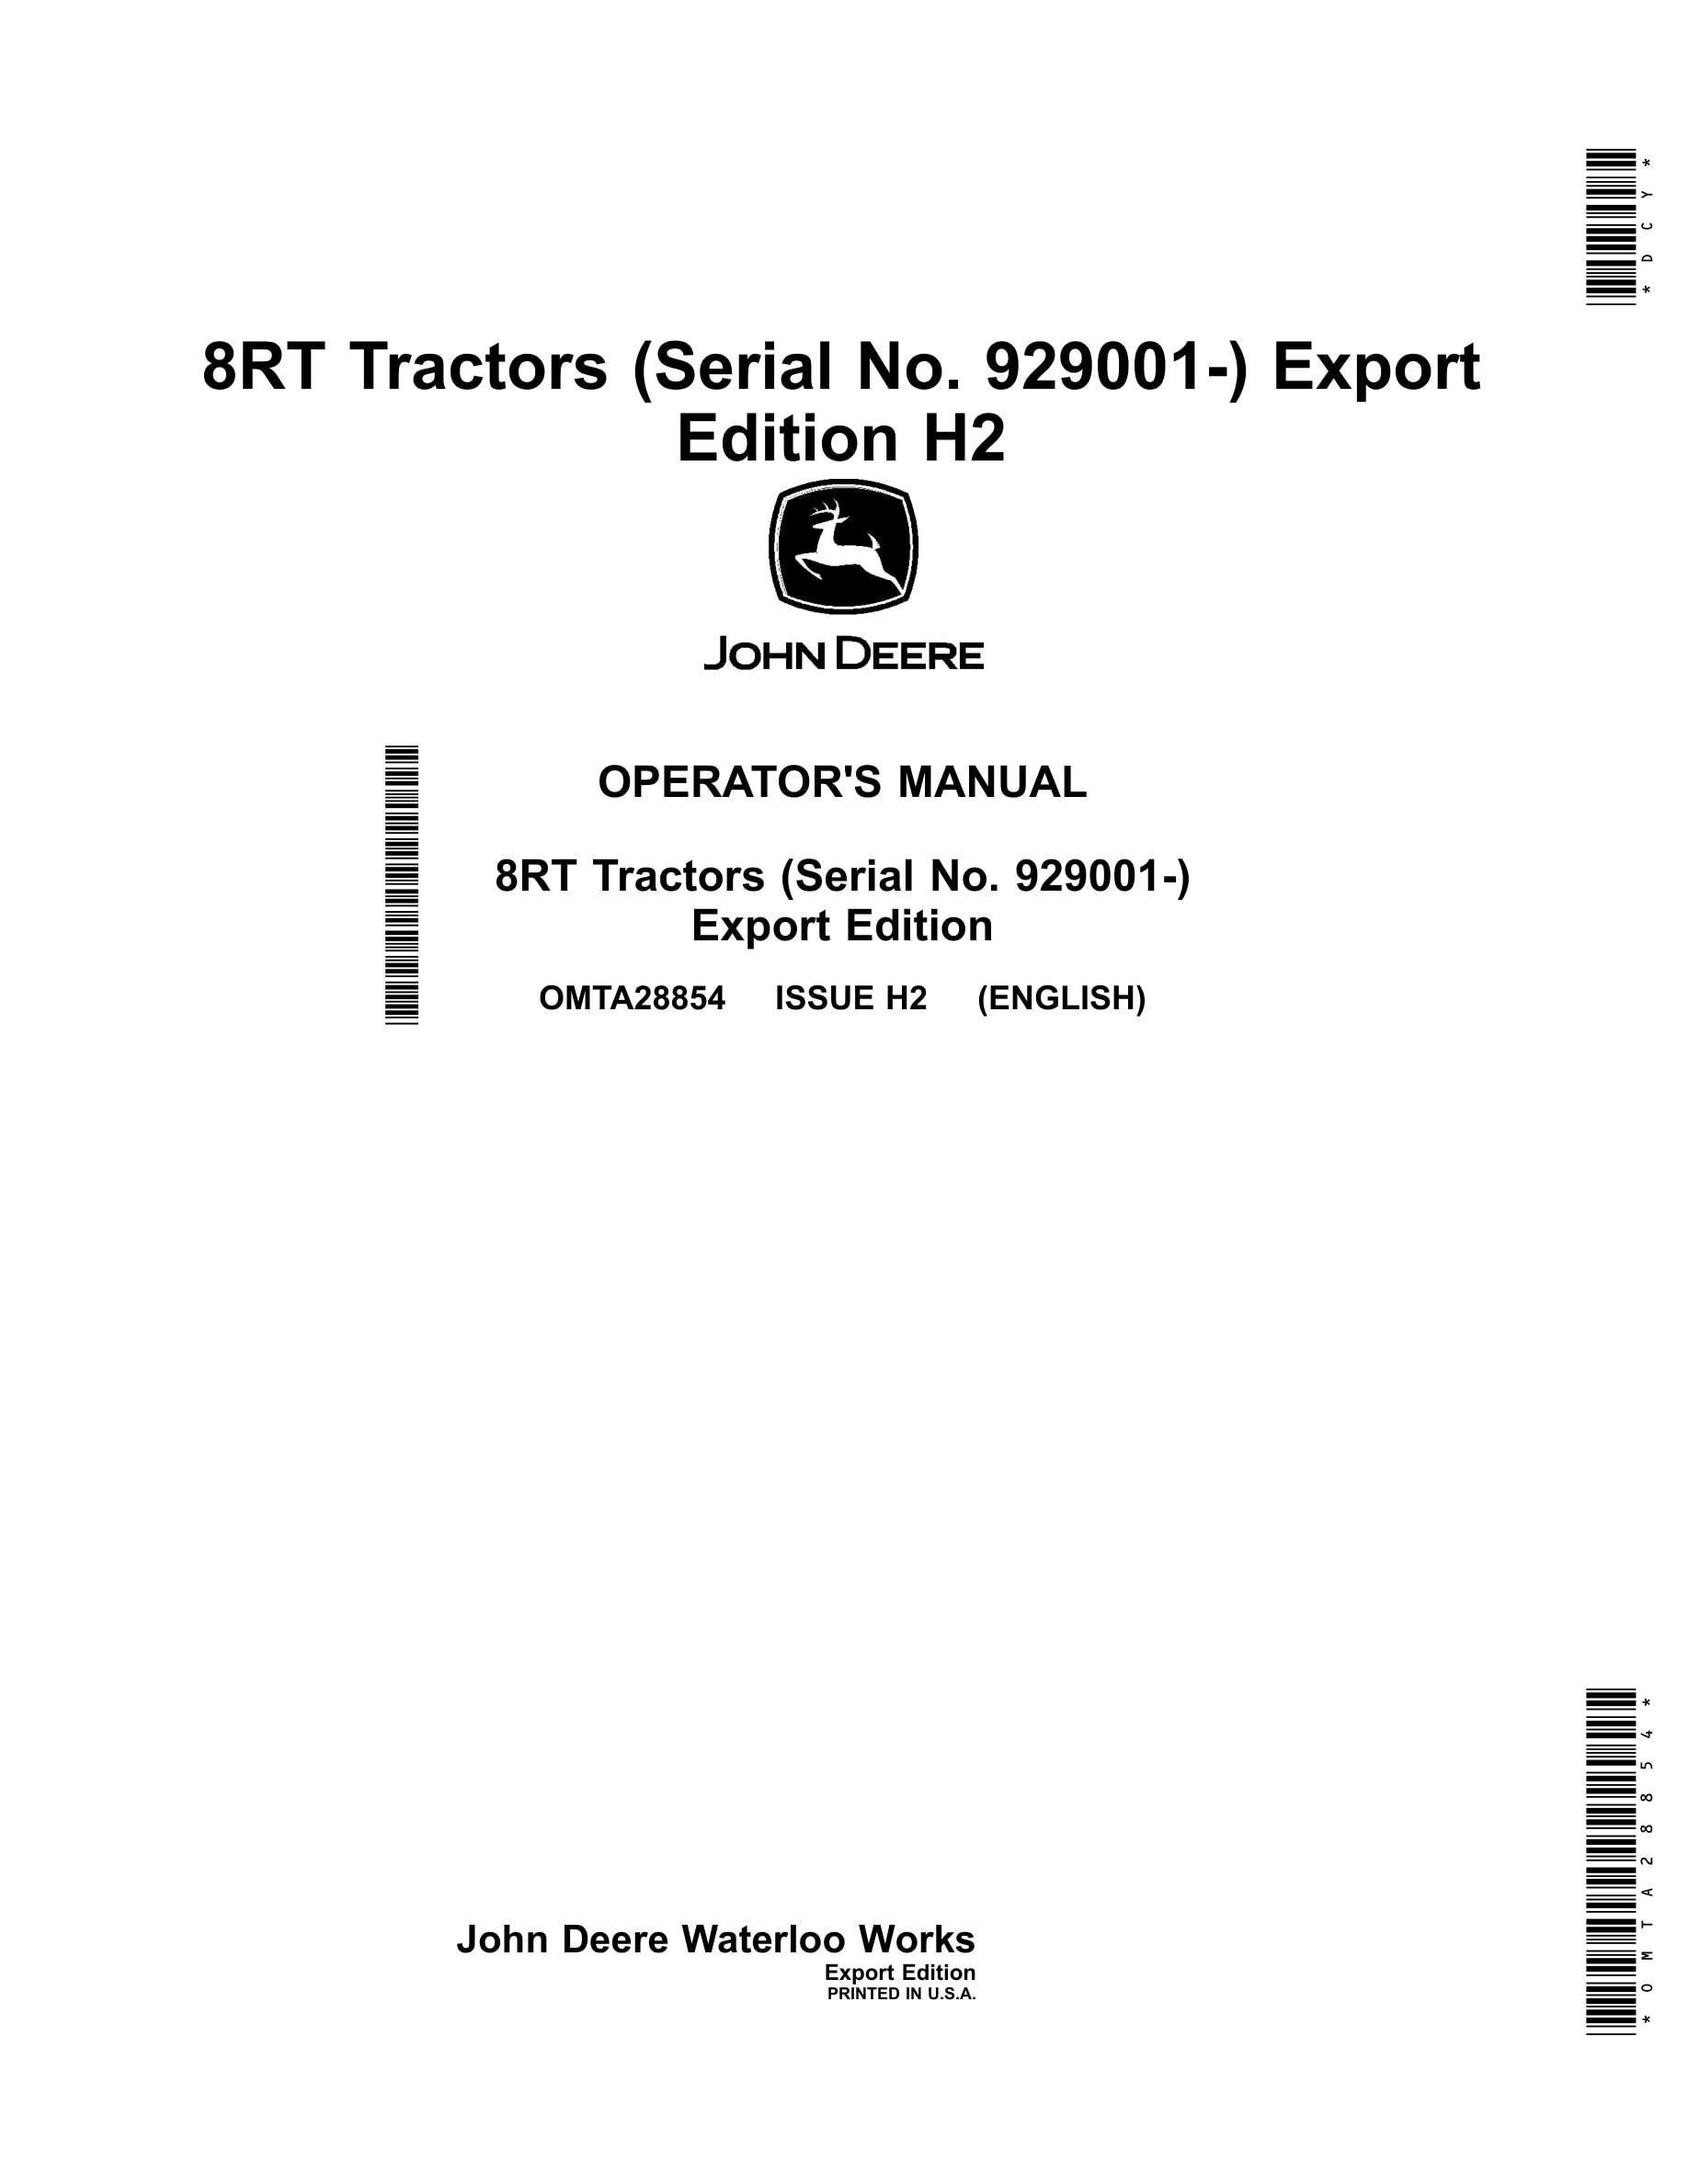 John Deere 8rt Tractors Operator Manuals OMTA28854-1